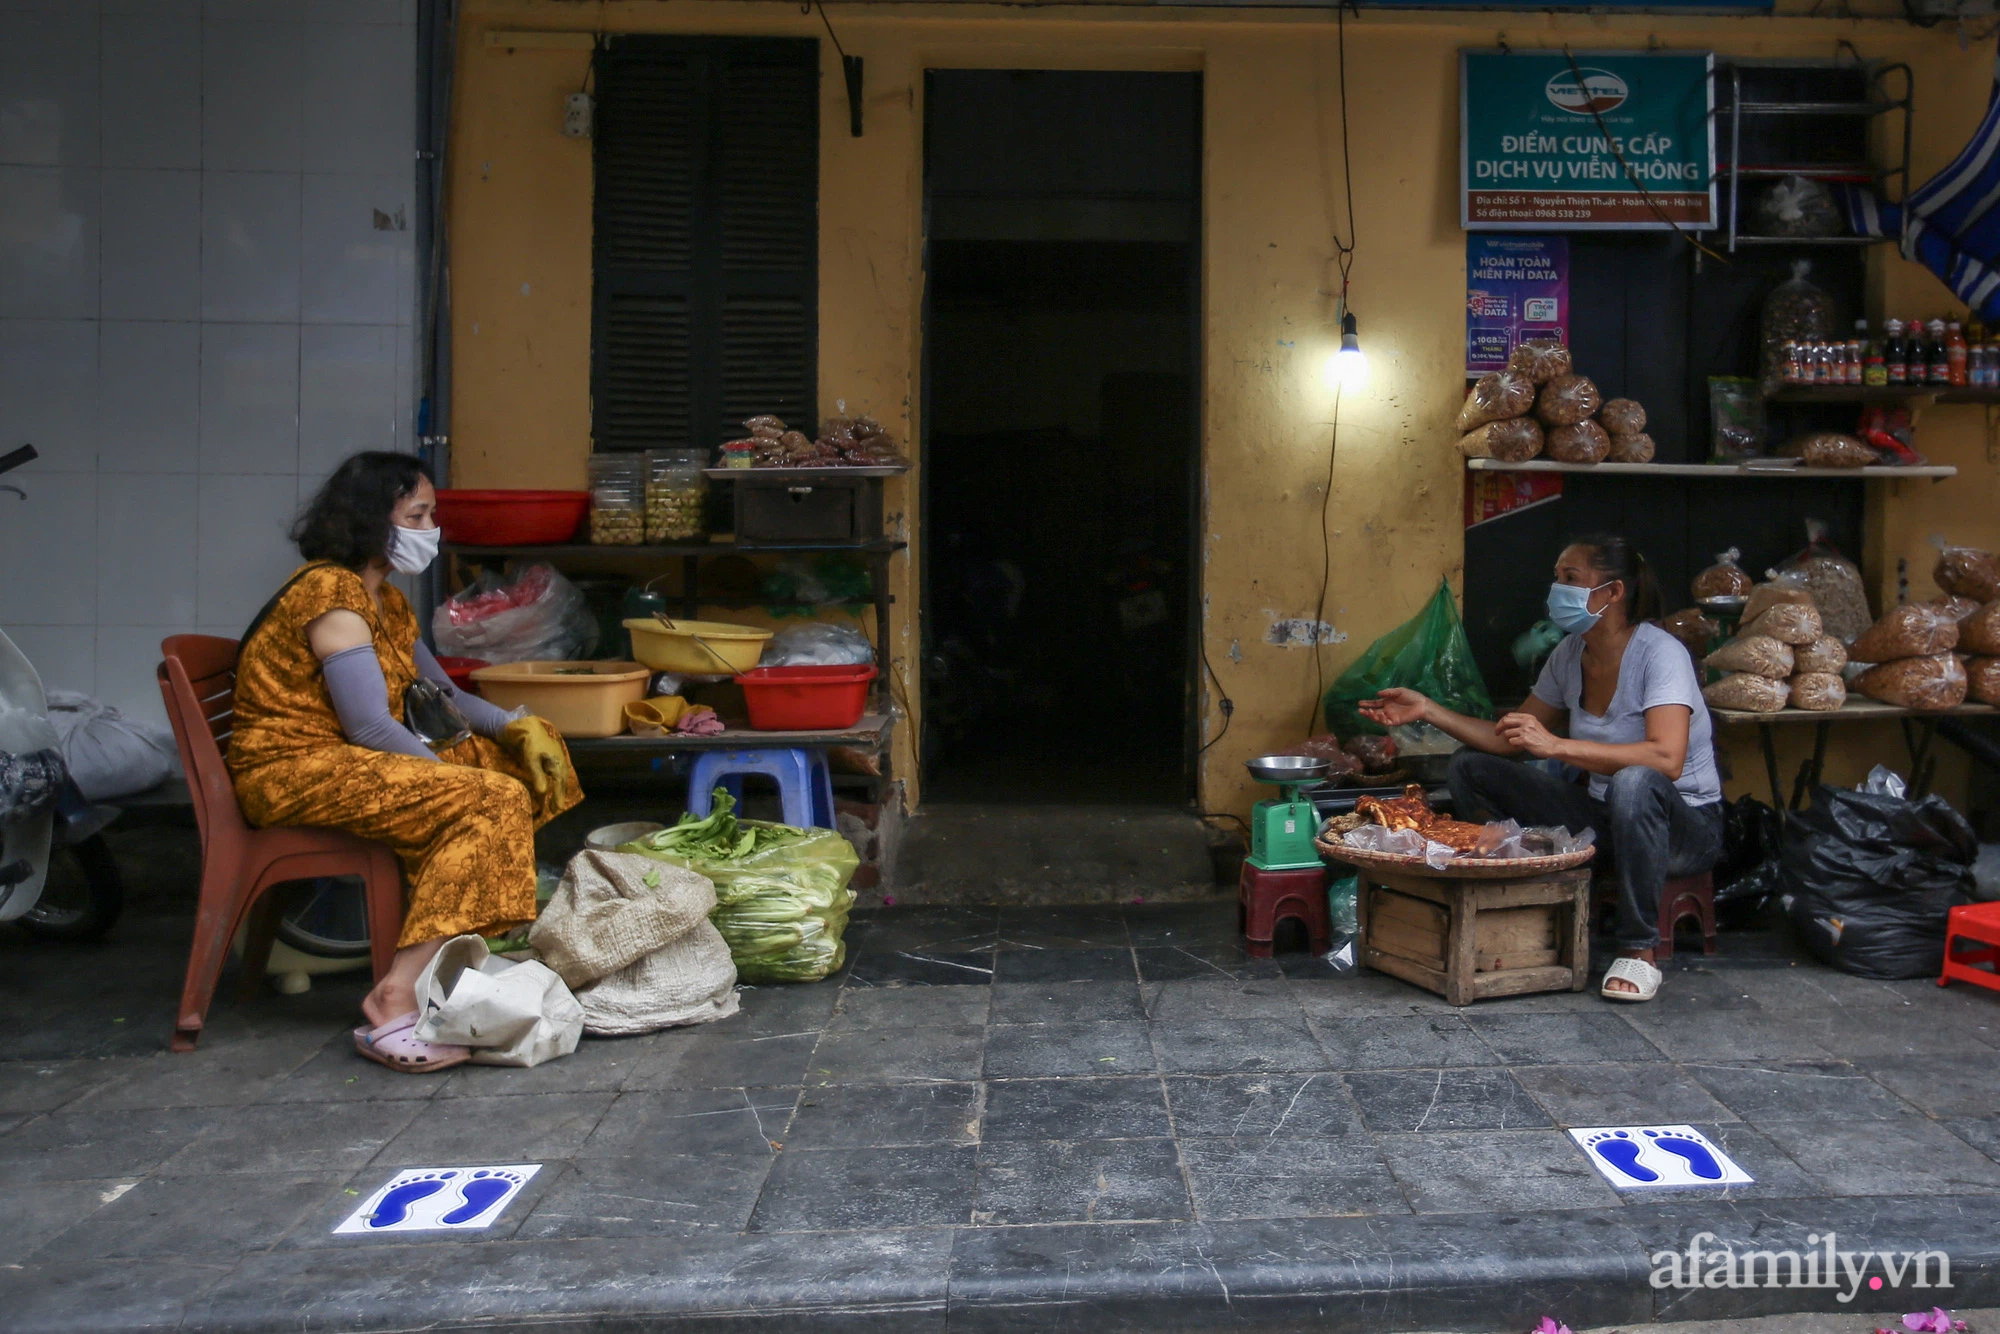 Ngày đầu giãn cách theo Chỉ thị 16, khu chợ ở Hà Nội kẻ vạch cách nhau 2 m, người mua kẻ bán tuy xa mặt nhưng không cách lòng - Ảnh 13.